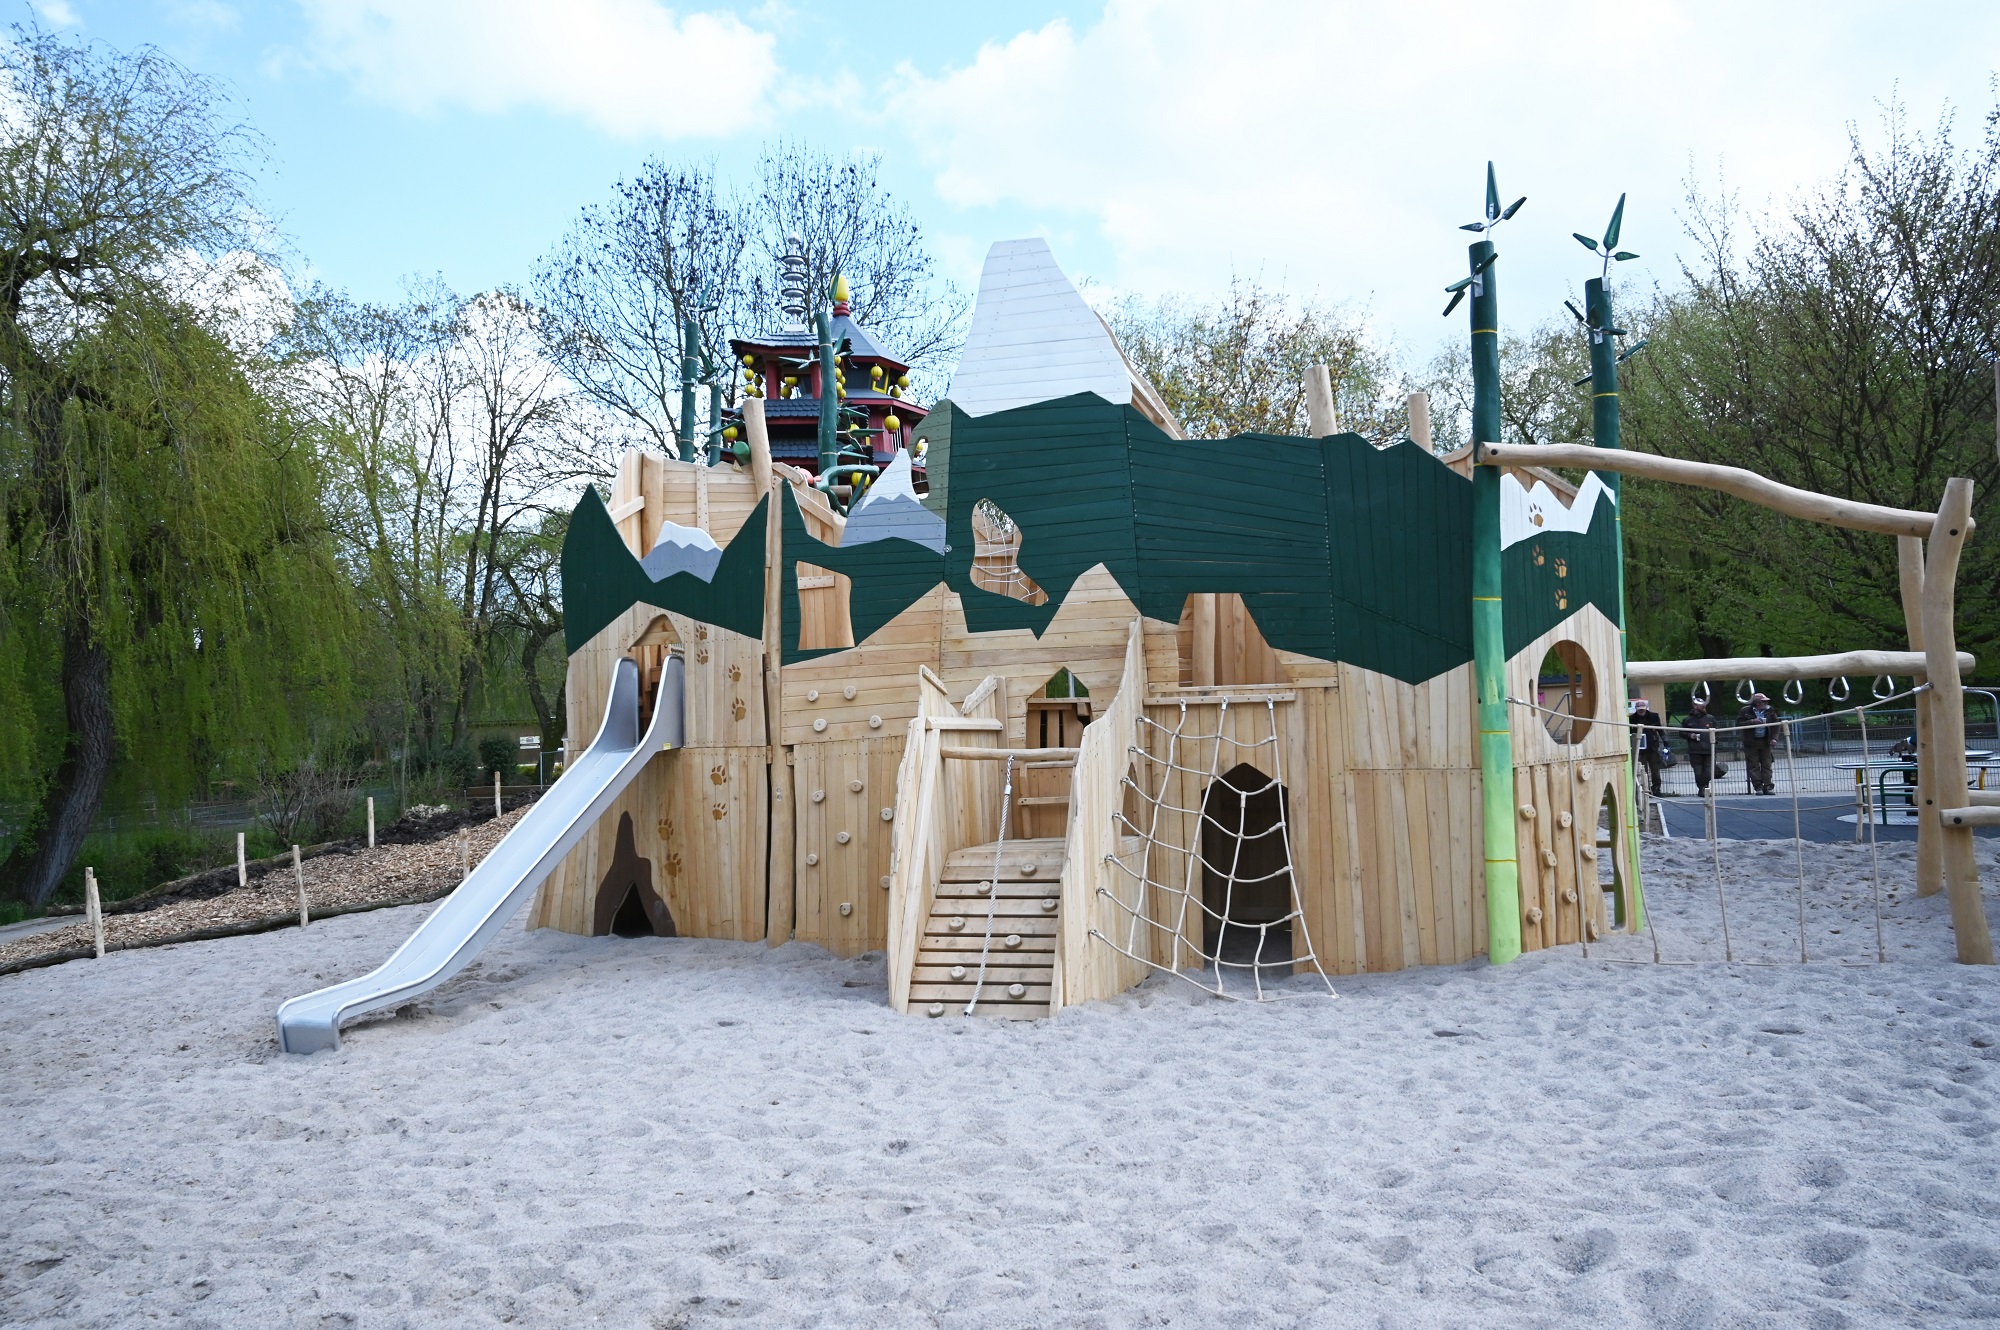 Der Playmore Fantasy-Abenteuerspielplatz im Tiergarten Kleve gilt als einer der schönsten Spielplätze am Niederrhein (1)